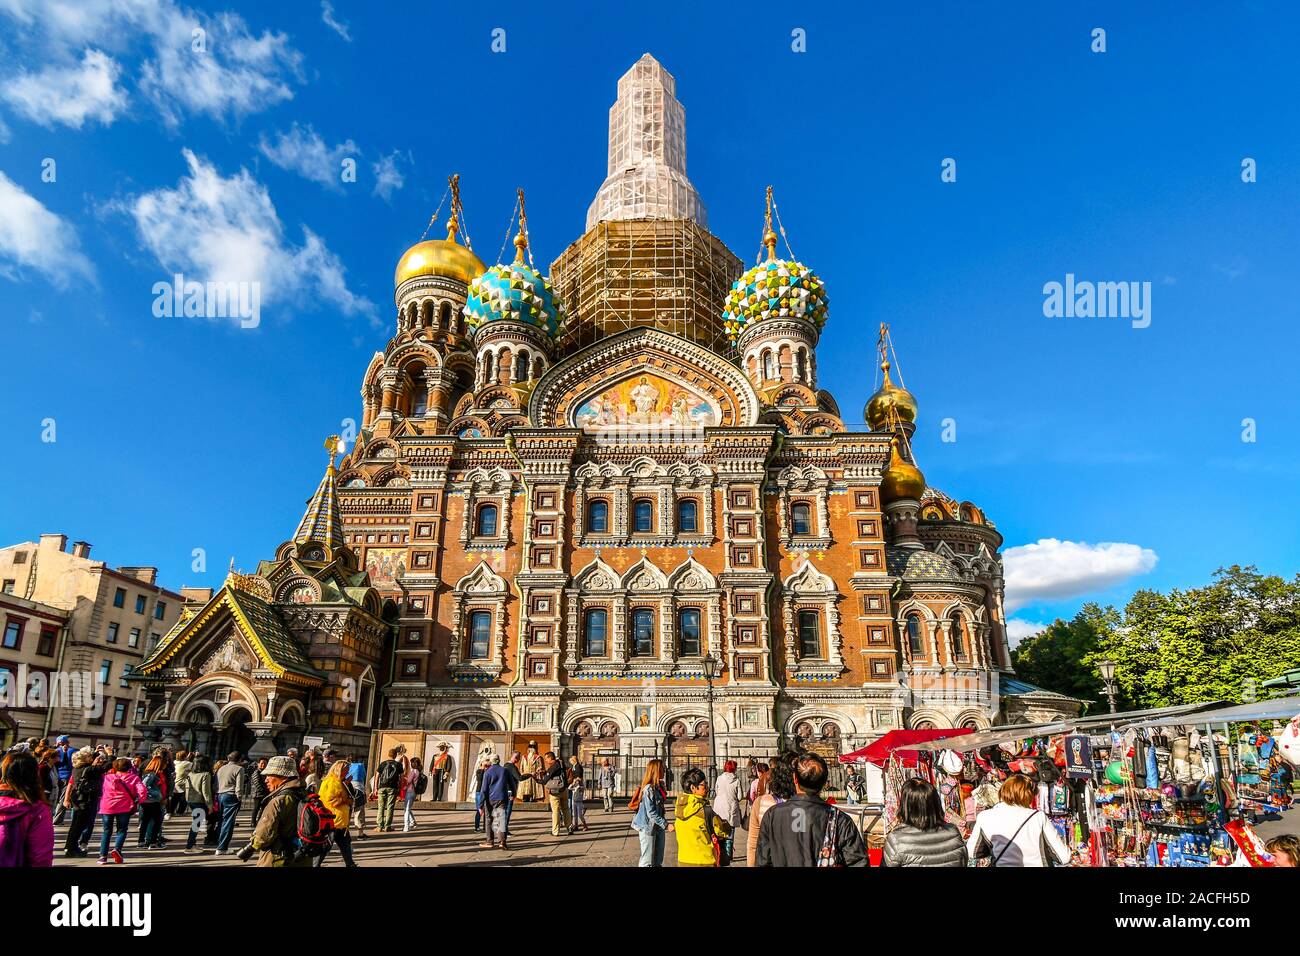 Touristen mischen sich auf dem Platz vor der mittelalterlichen Zwiebeltürmen und Fassade der Kirche des Erlösers auf verschüttetem Blut in St. Petersburg, Russland. Stockfoto